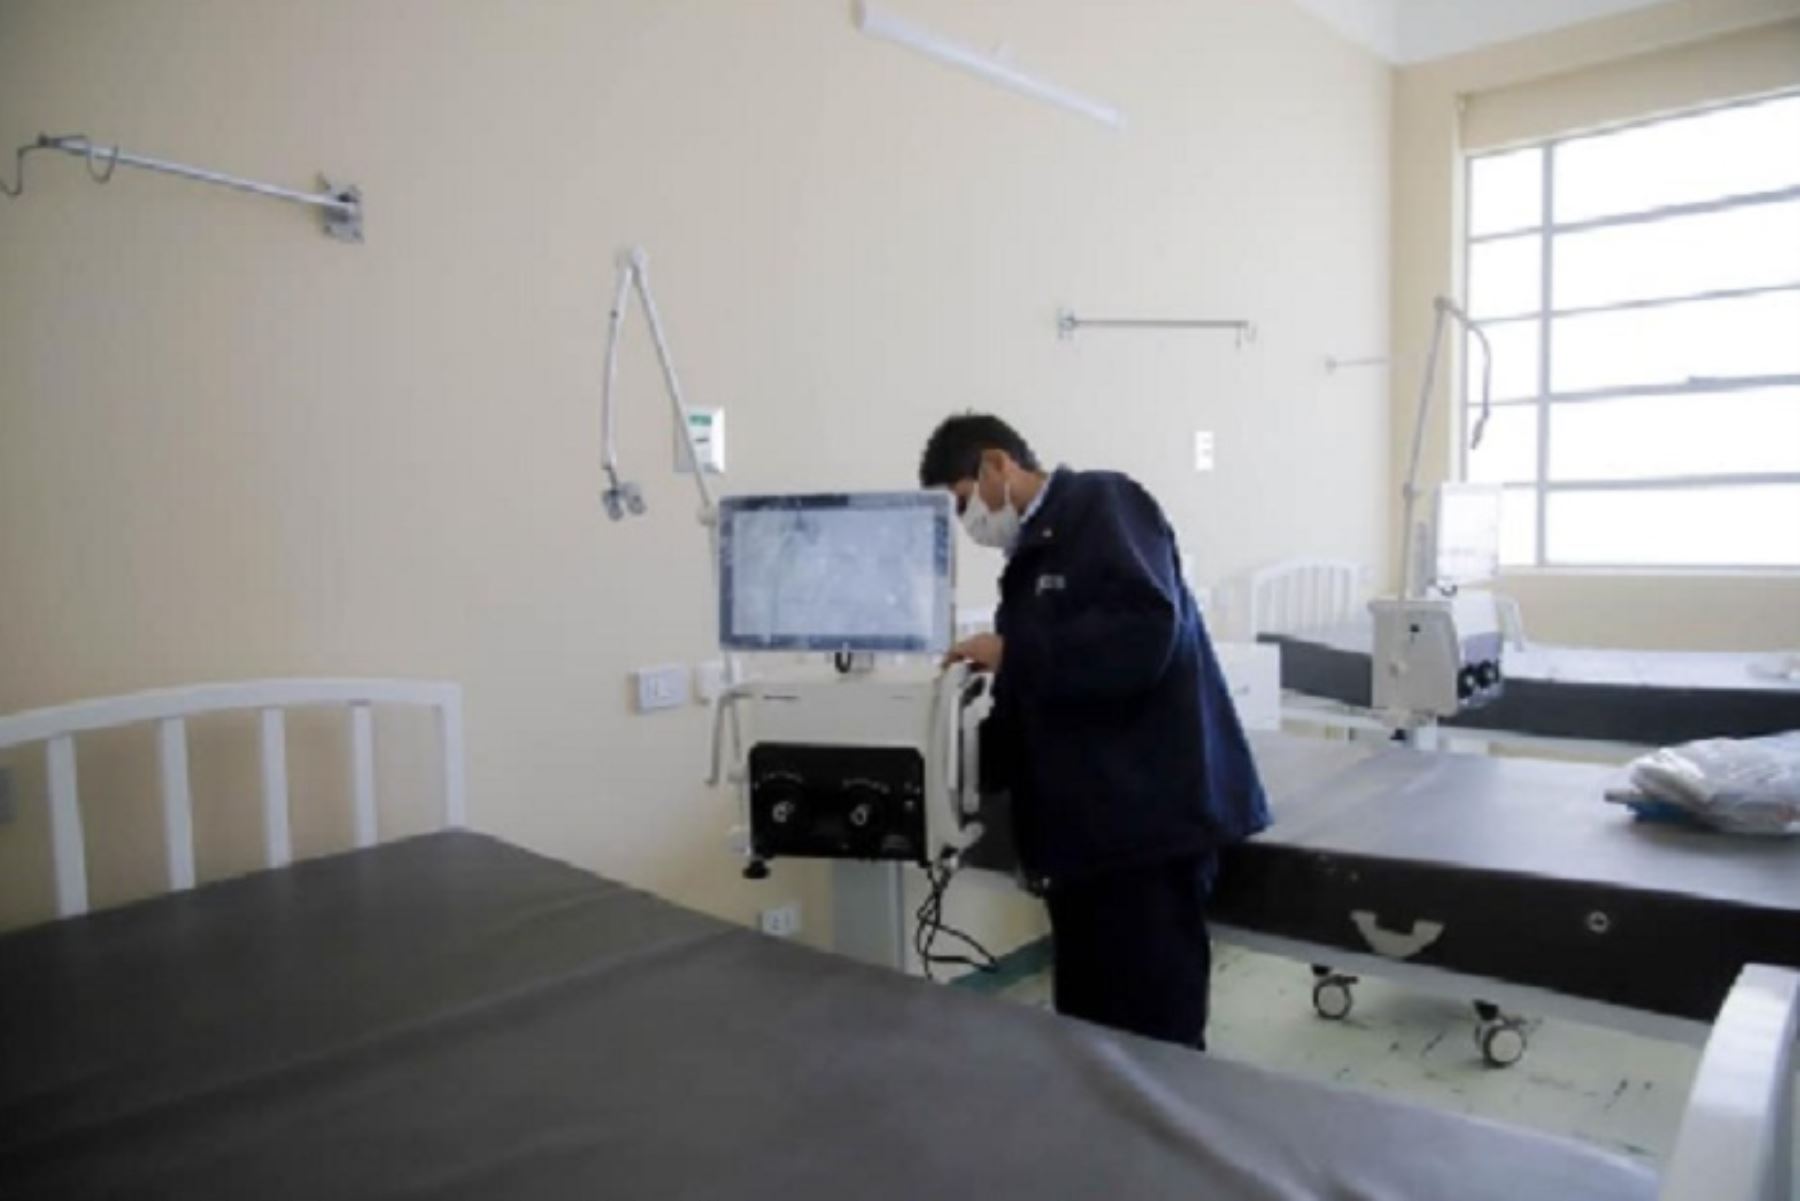 Las camas clínicas que serán adquiridas por los gobiernos locales, permitirán implementar nuevos ambientes covid-19 en el hospital de Camaná, zona donde en los últimos días se ha registrado un elevado número de pacientes con la enfermedad.